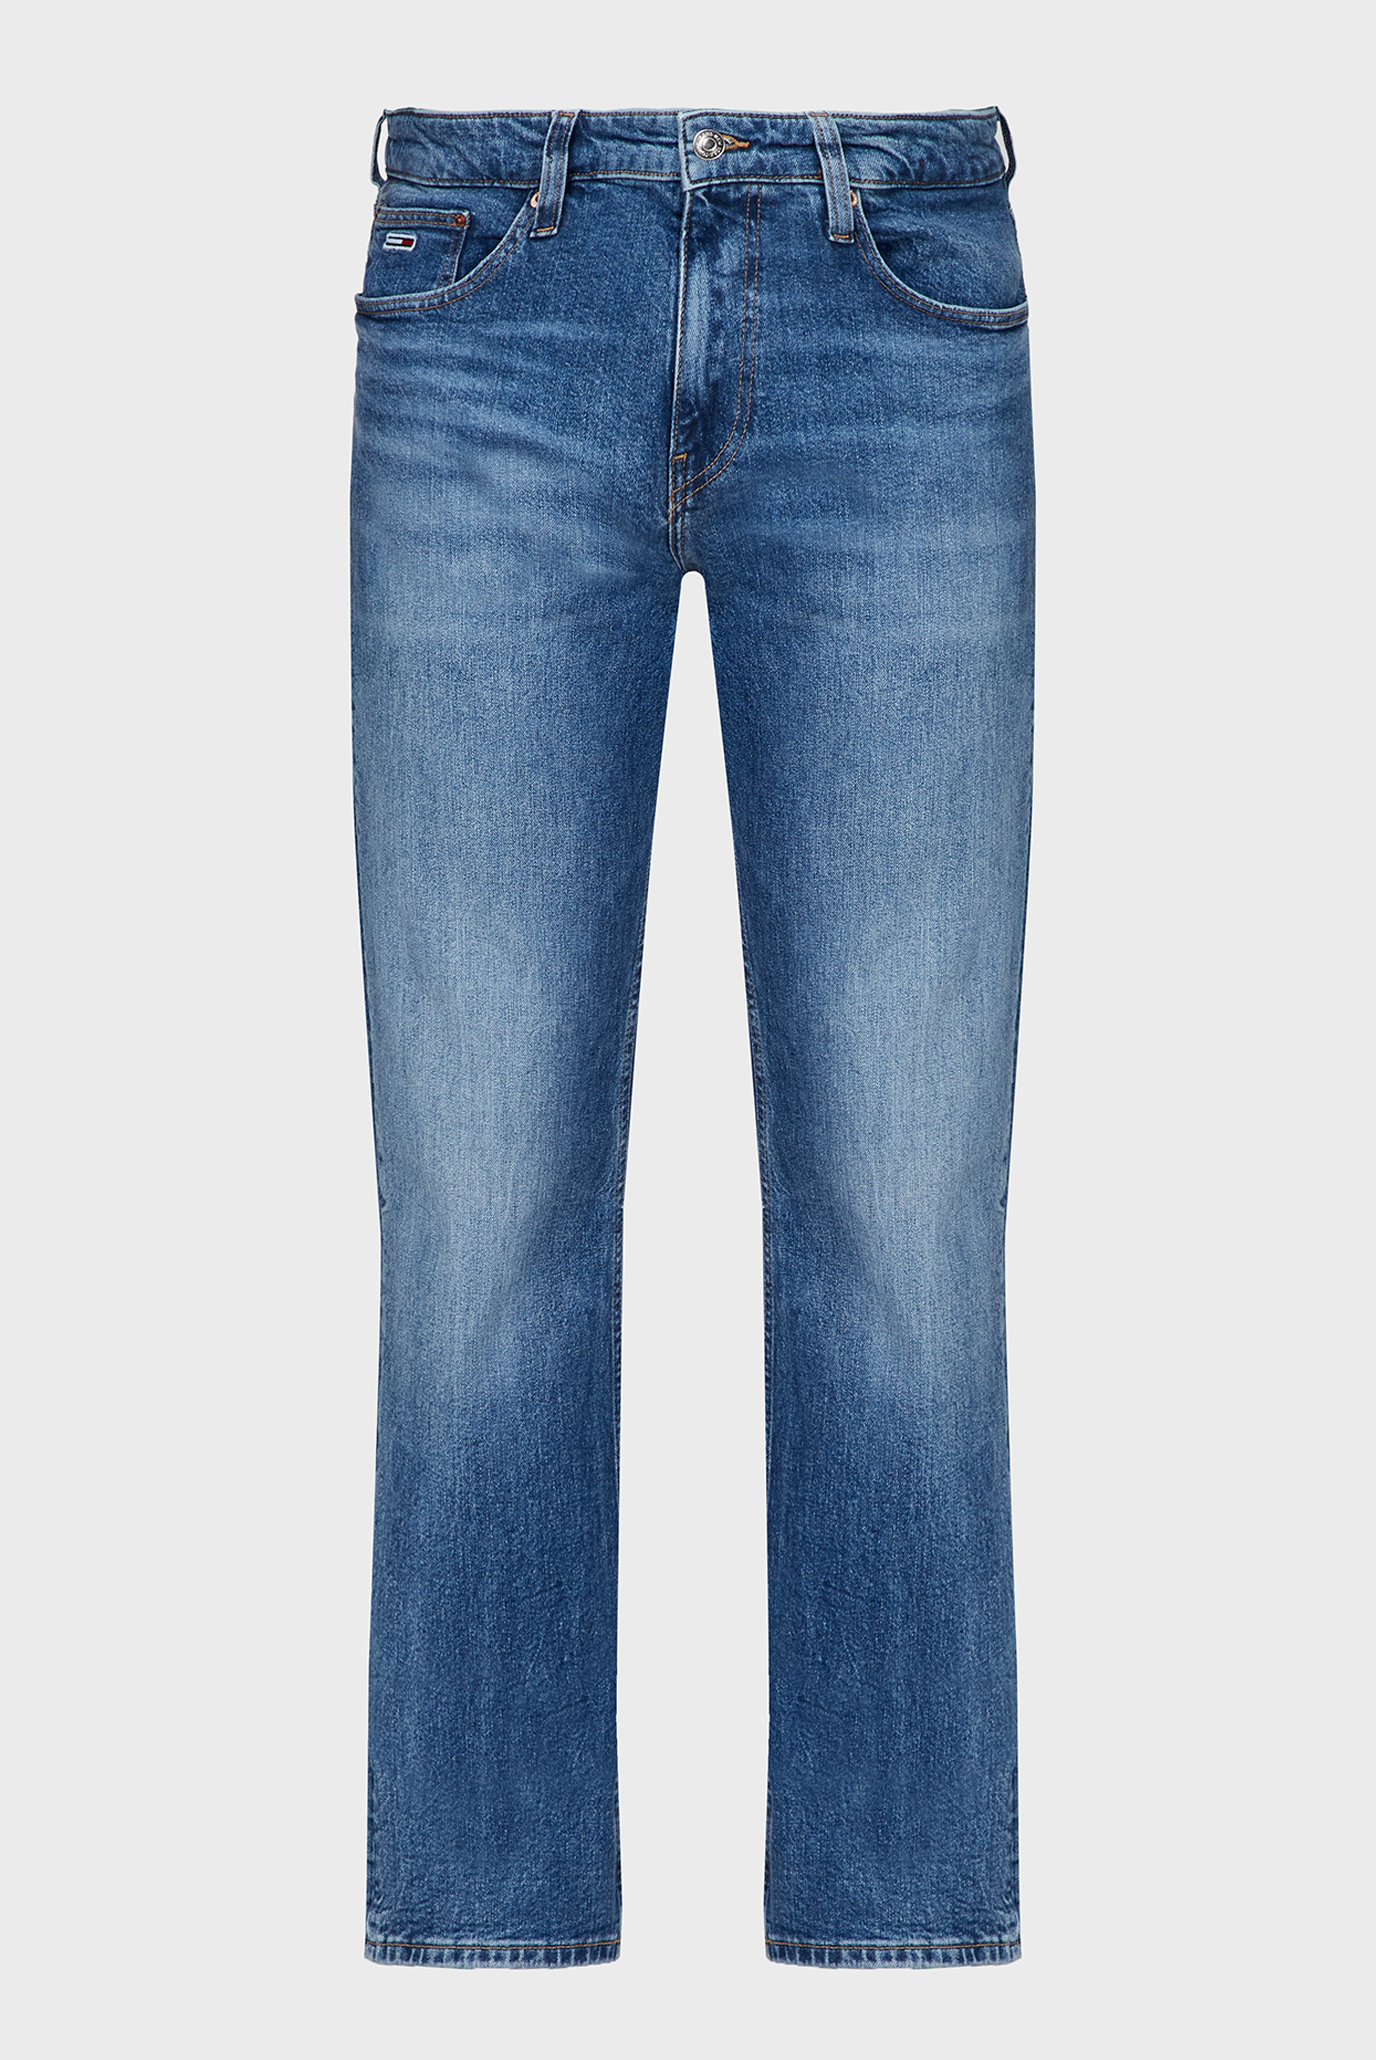 Мужские синие джинсы RYAN RGLR STRGHT CG5136 1